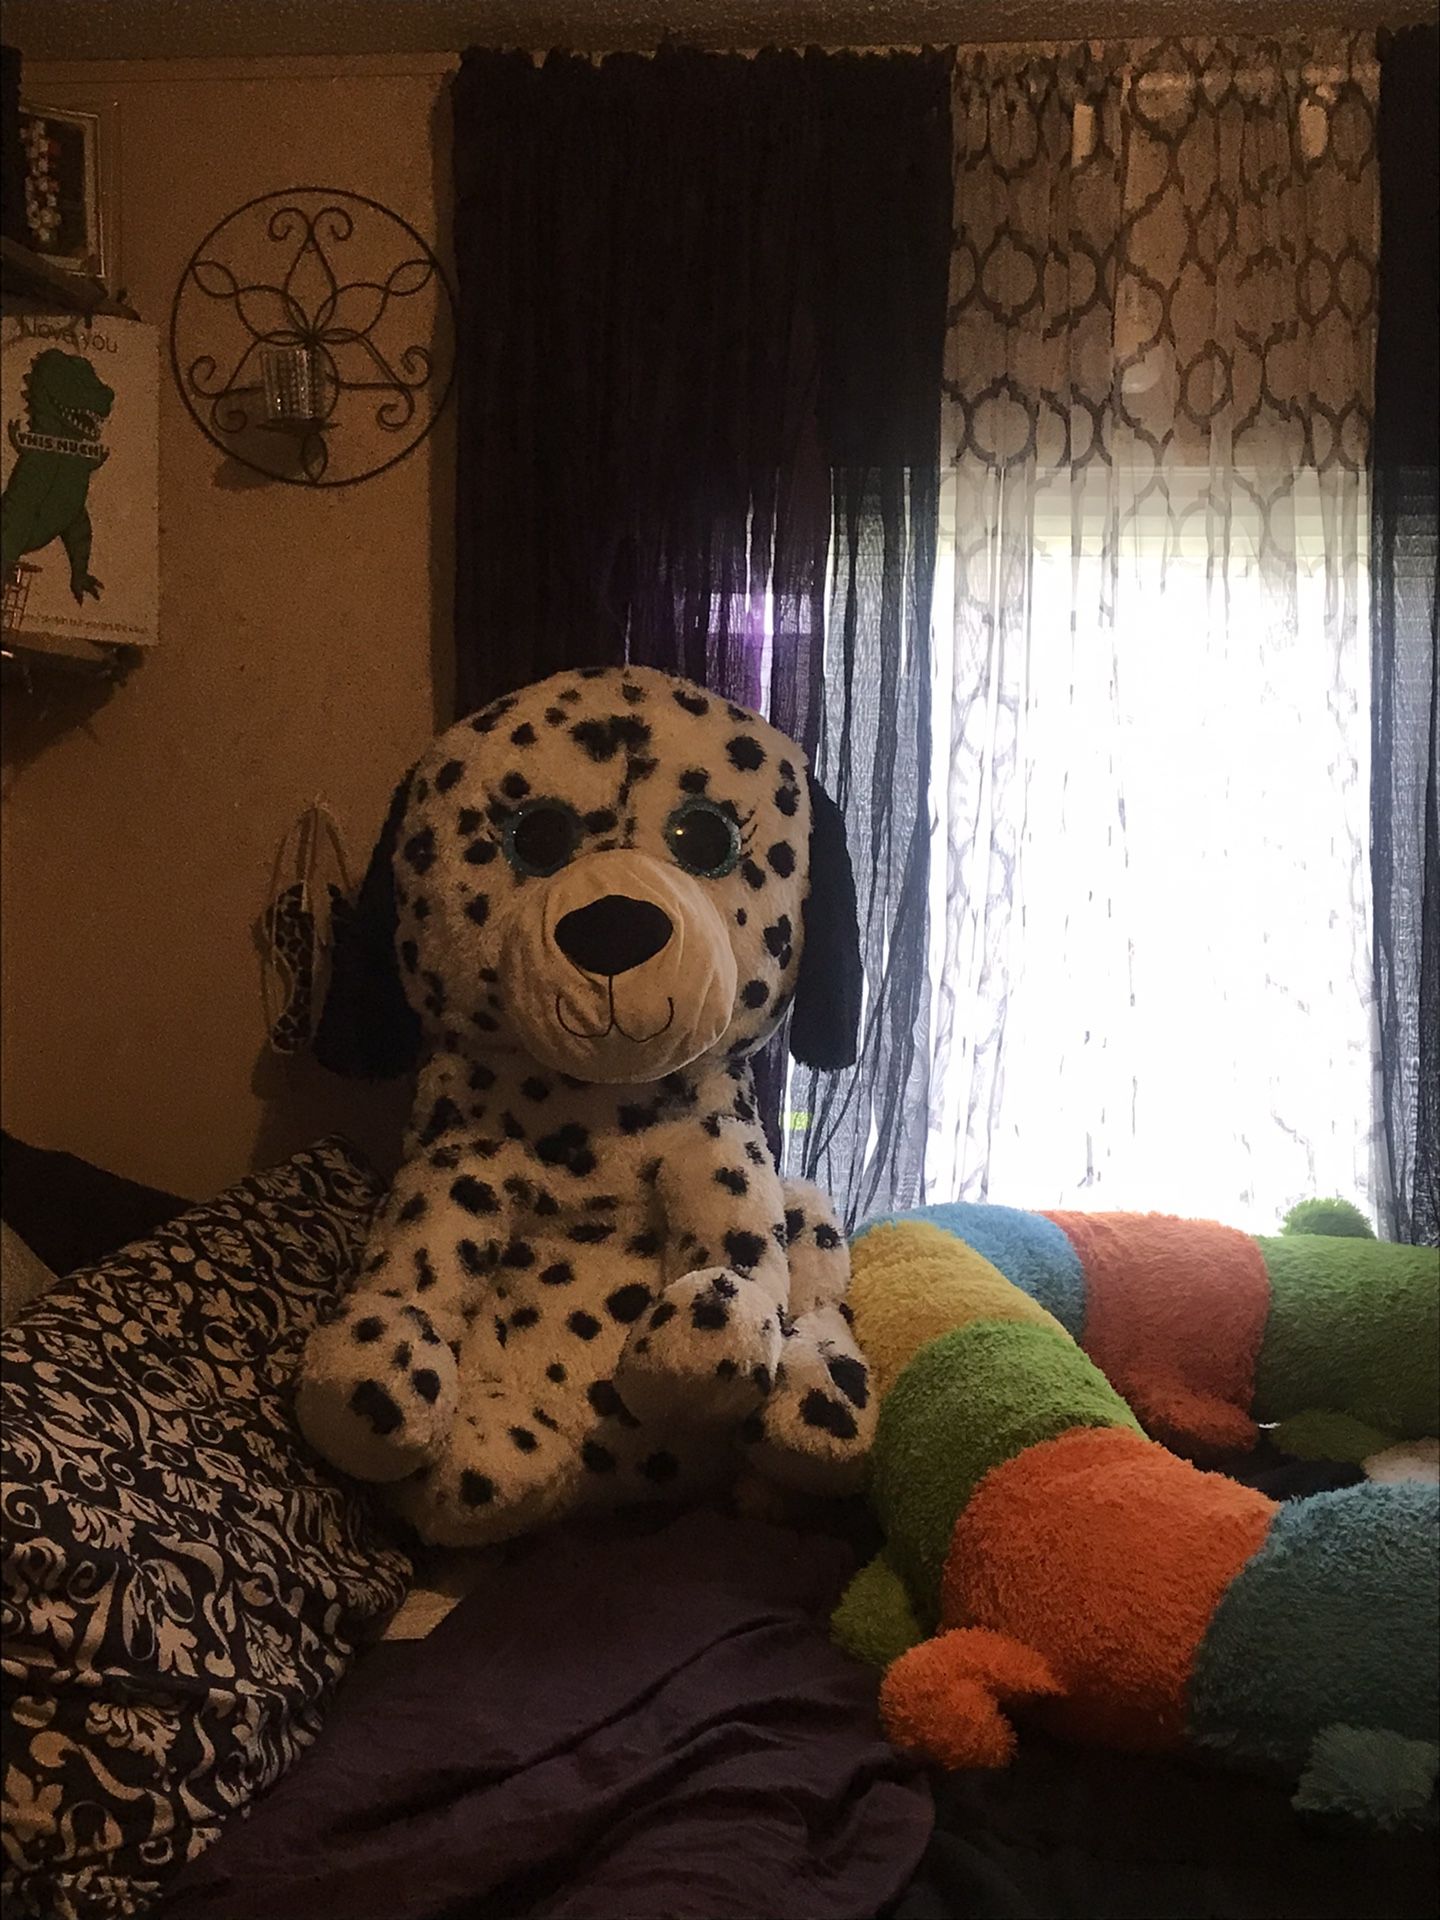 Giant dog stuffed animal